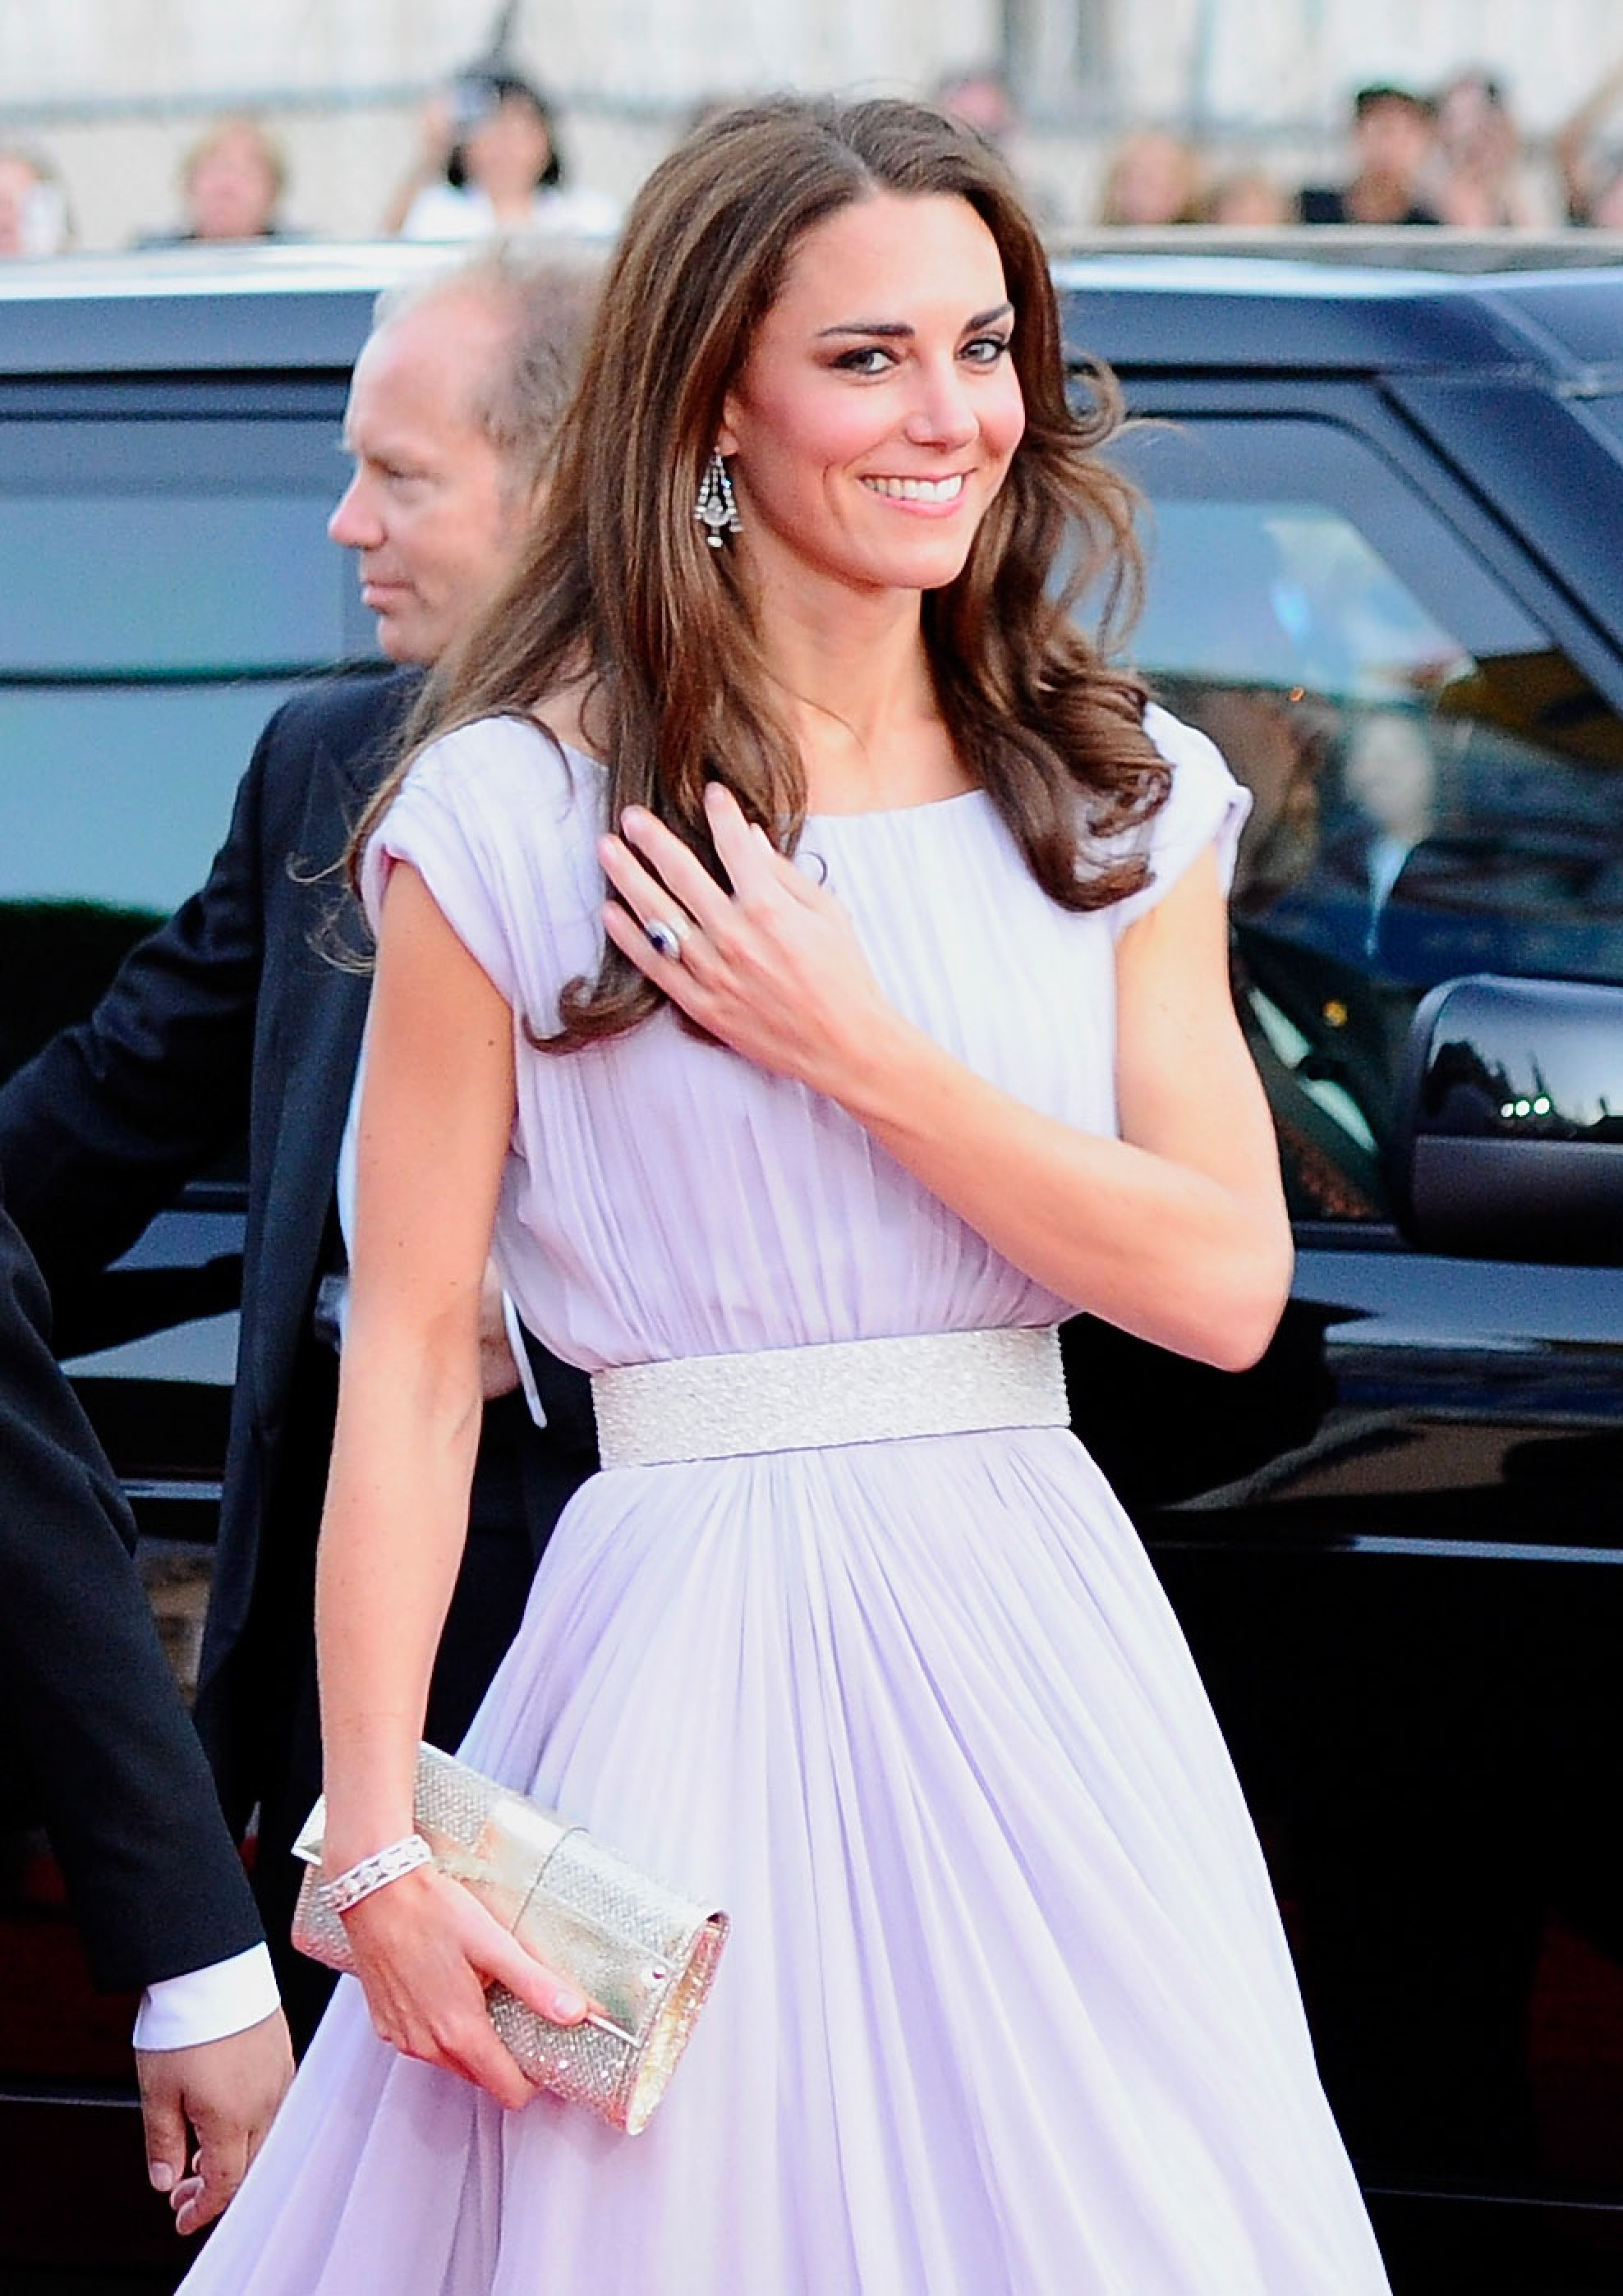 Prada Black Satin Clutch with Stone Embellishment - Kate Middleton